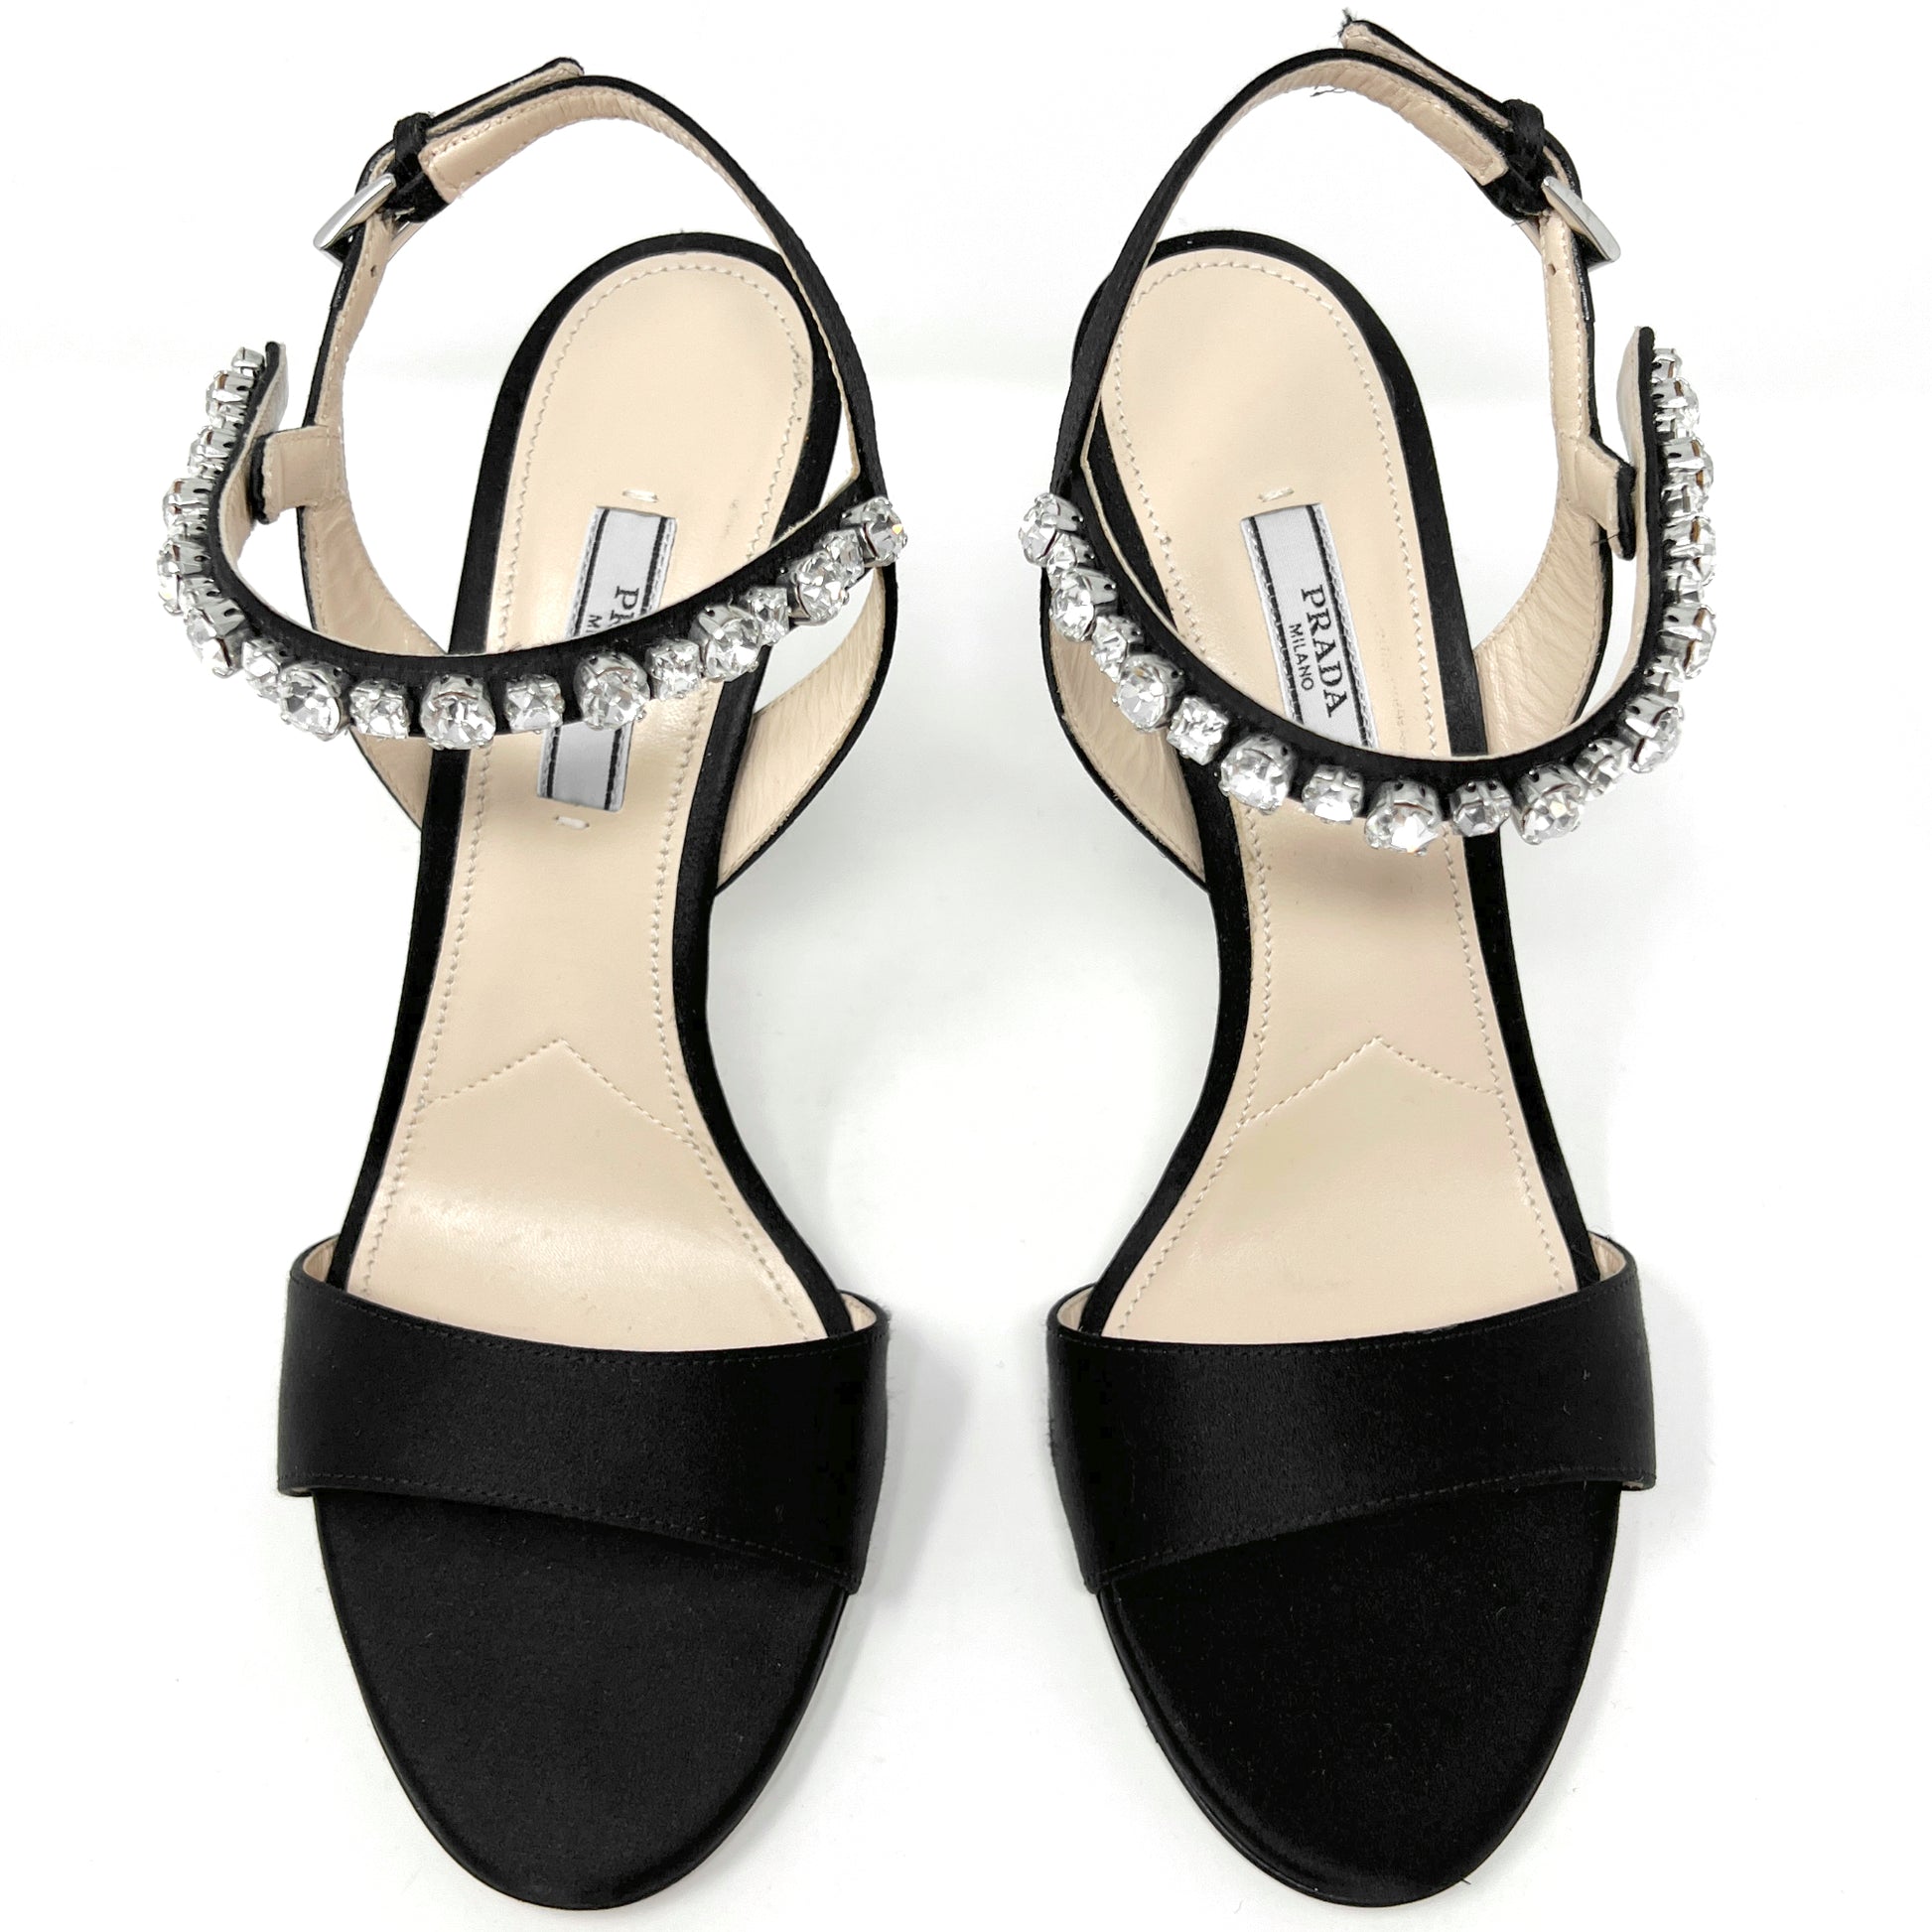 Prada Black Satin Crystal Embellished Strap Slingback High Heel Sandals